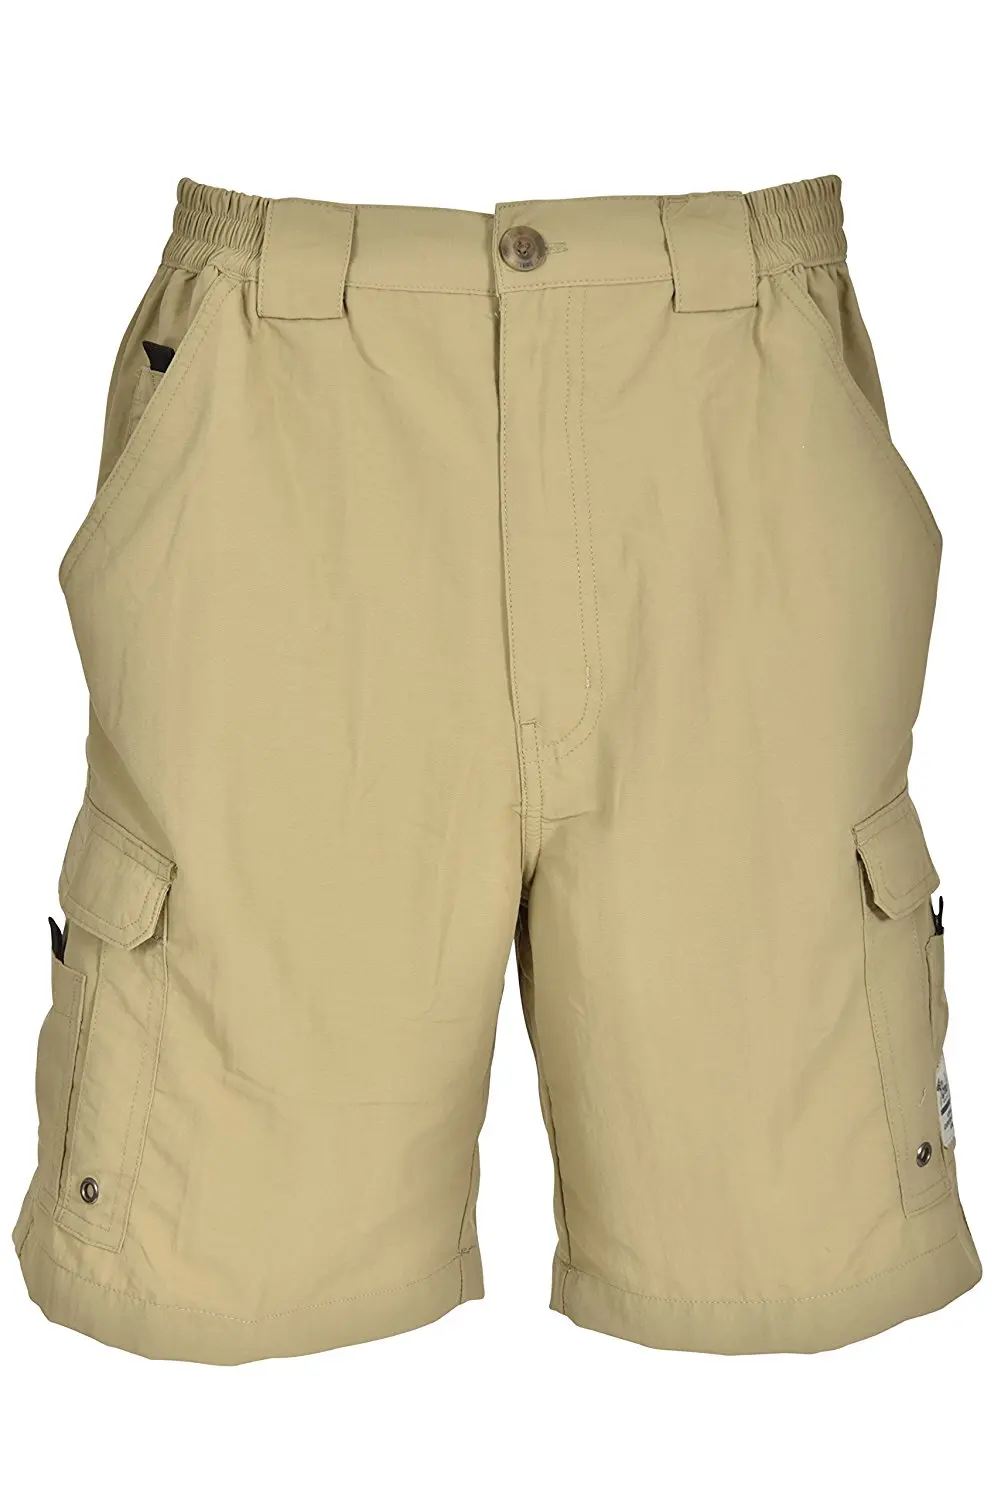 Buy Bimini Bay Outfitters Mens Boca Grande Nylon Short in Cheap Price on Alibaba.com